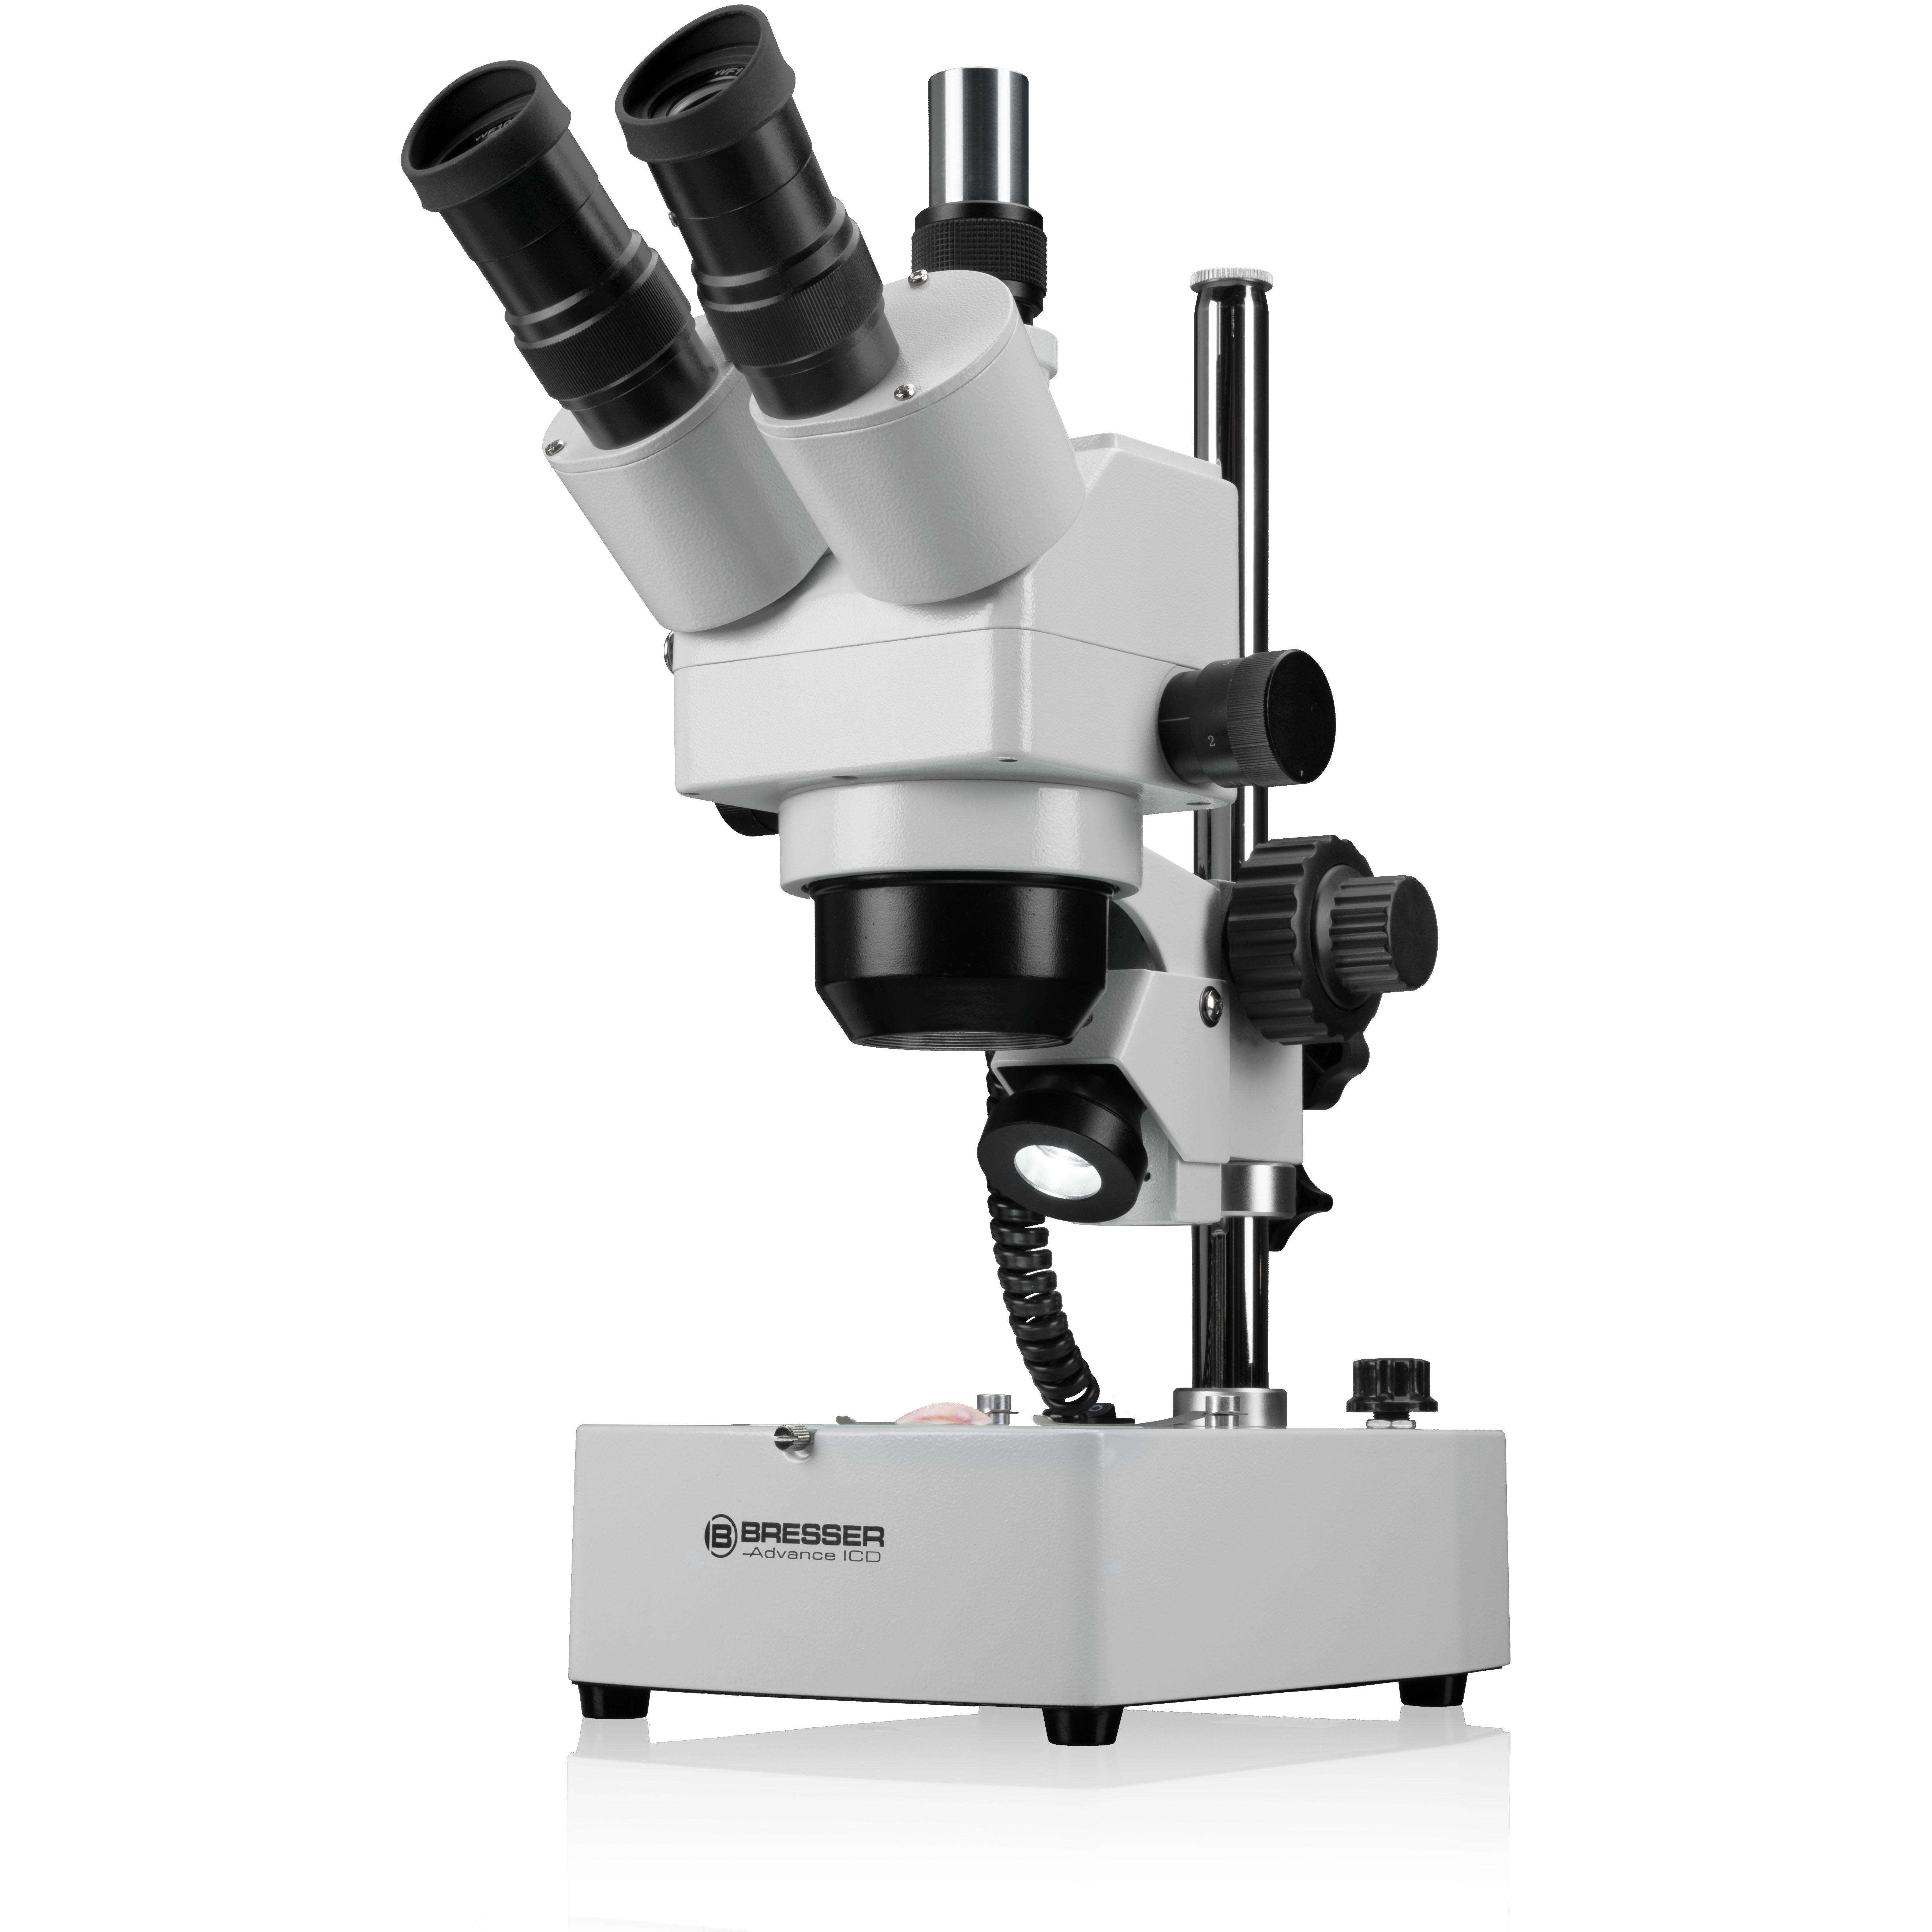 Microscopio zoom stereo di alta qualità per amatori e applicazioni professionali